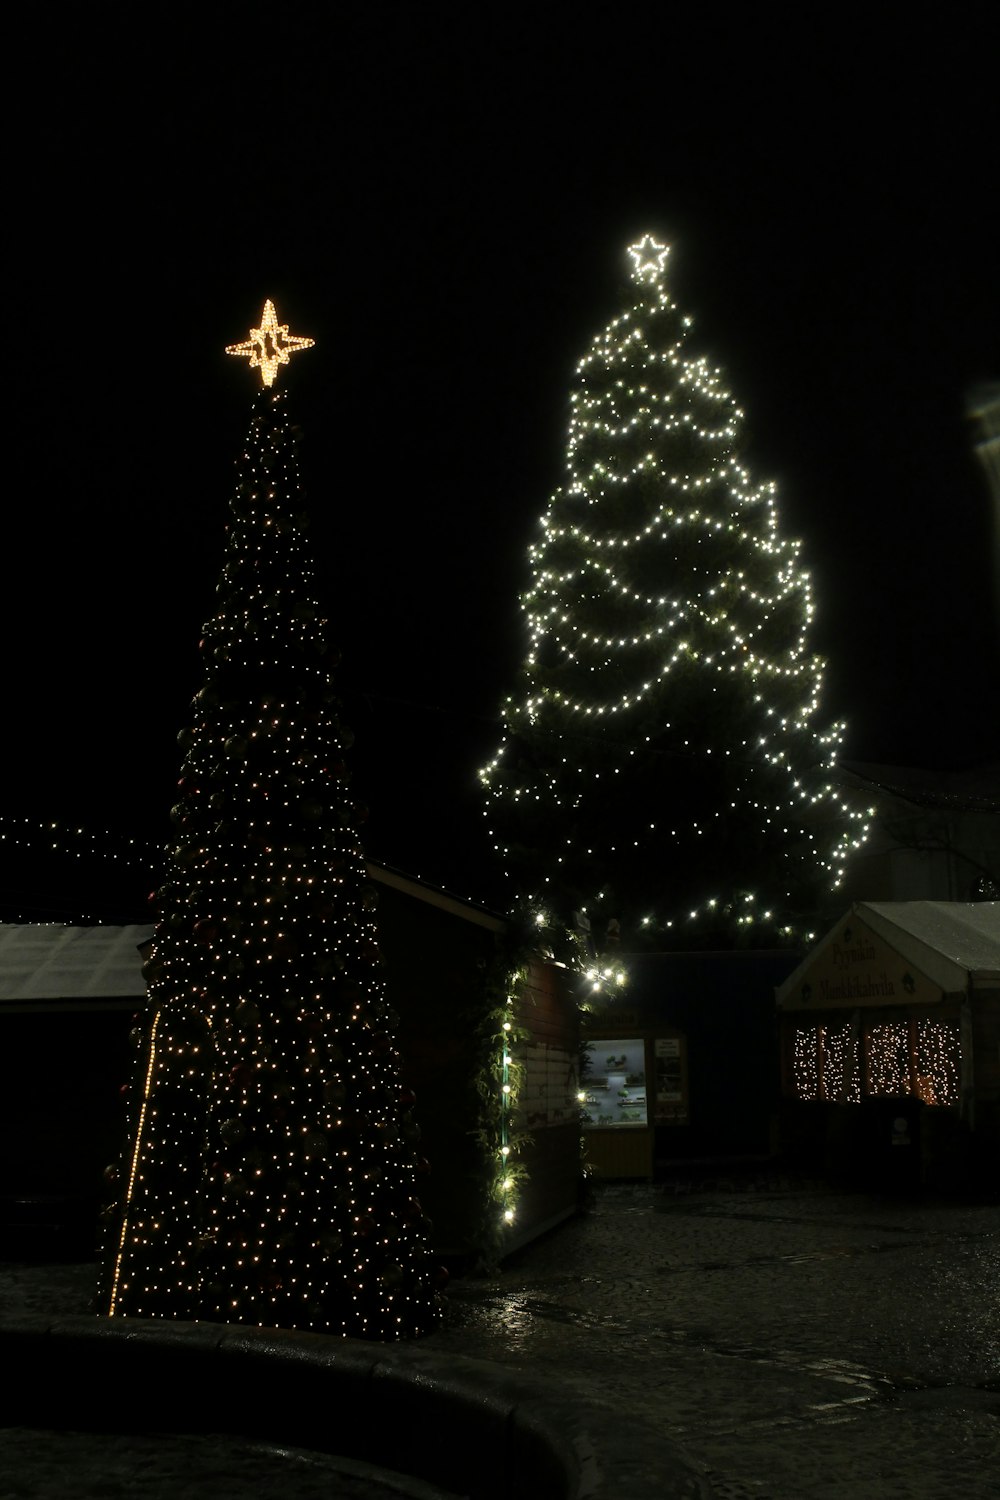 Arbre de Noël avec guirlandes lumineuses allumées pendant la nuit